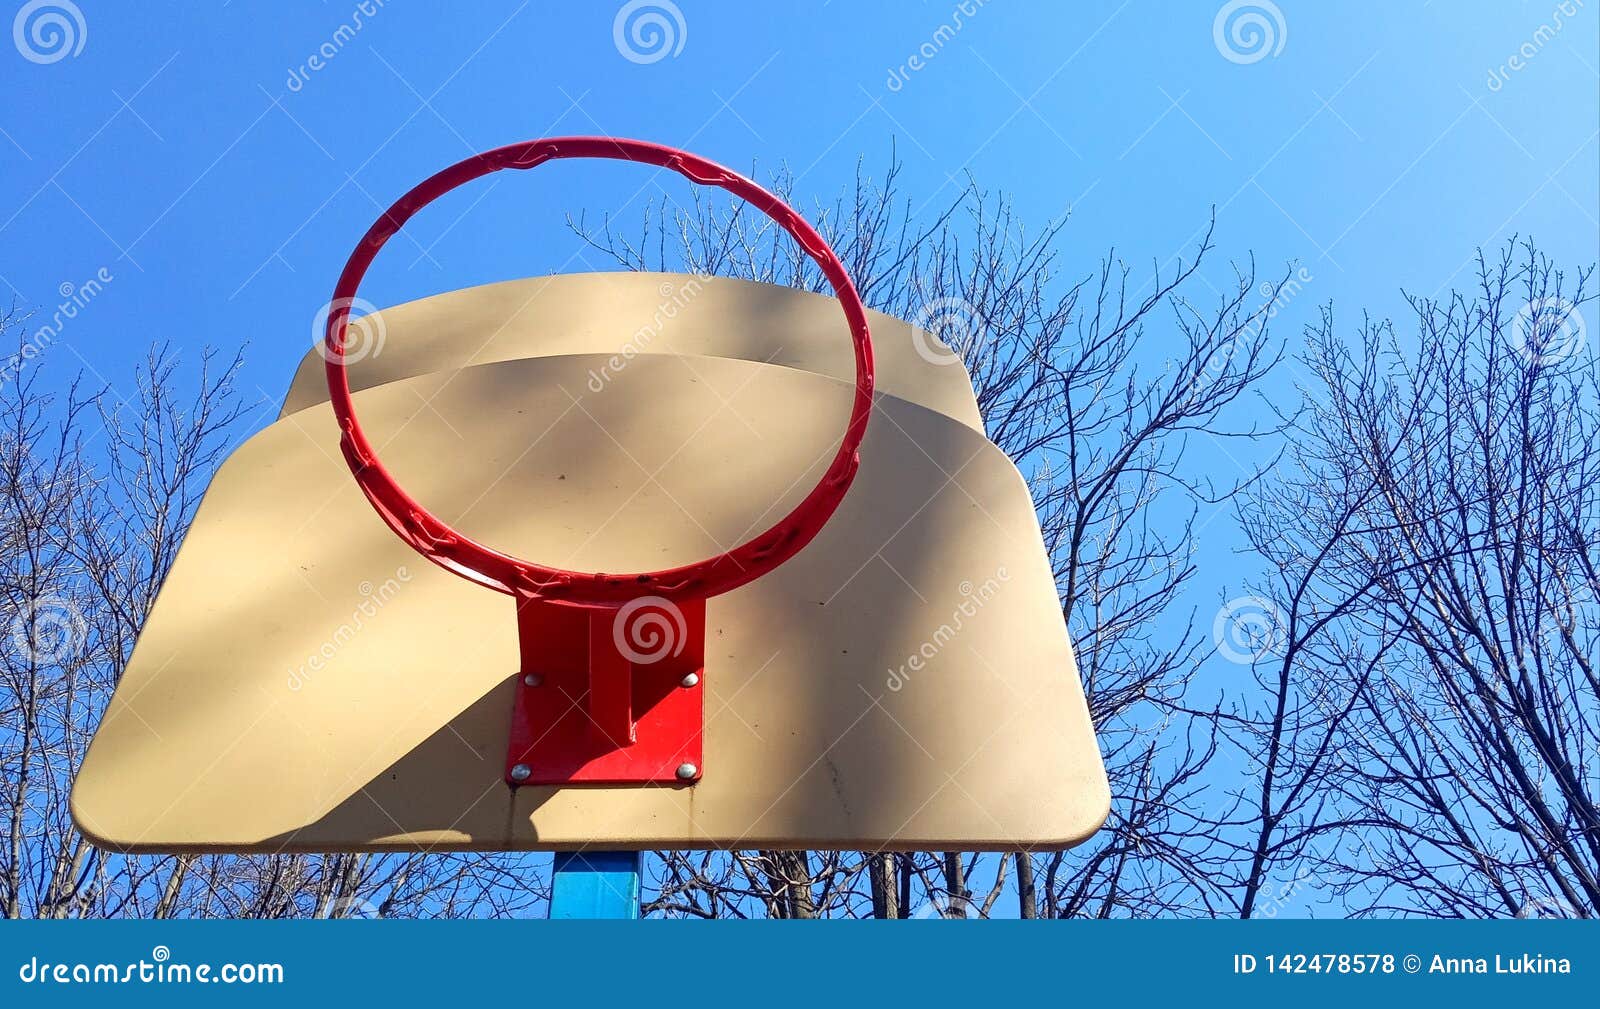 Dolny widok koszykówka obręcz outside na niebieskim niebie z gałąź w parku